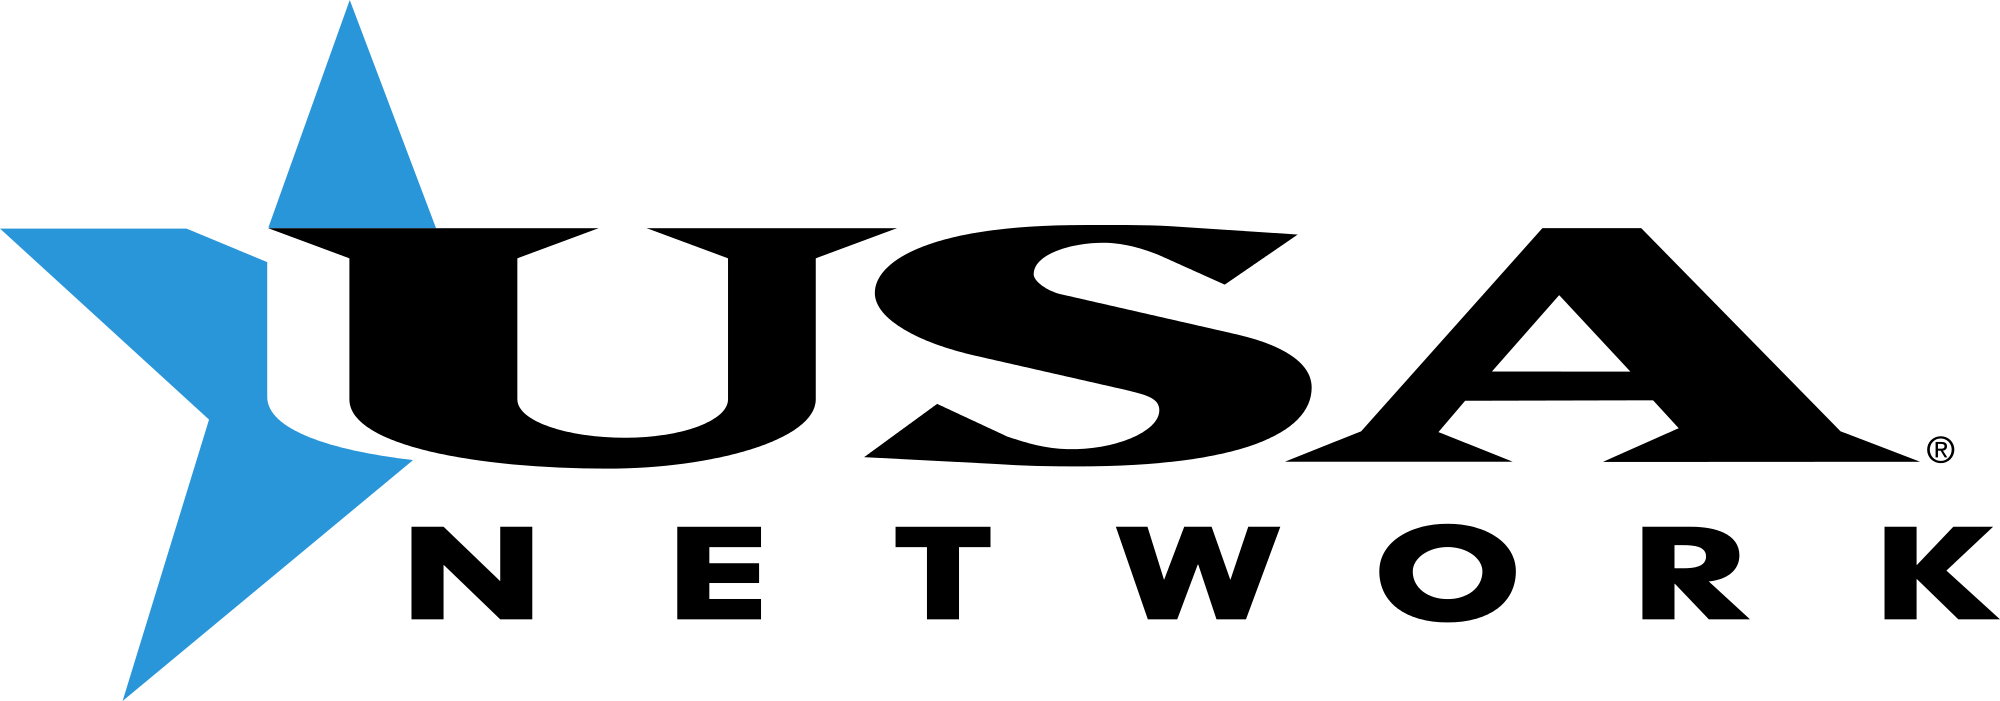 USA Network Logo - File:USA Network 1996.svg - Wikimedia Commons